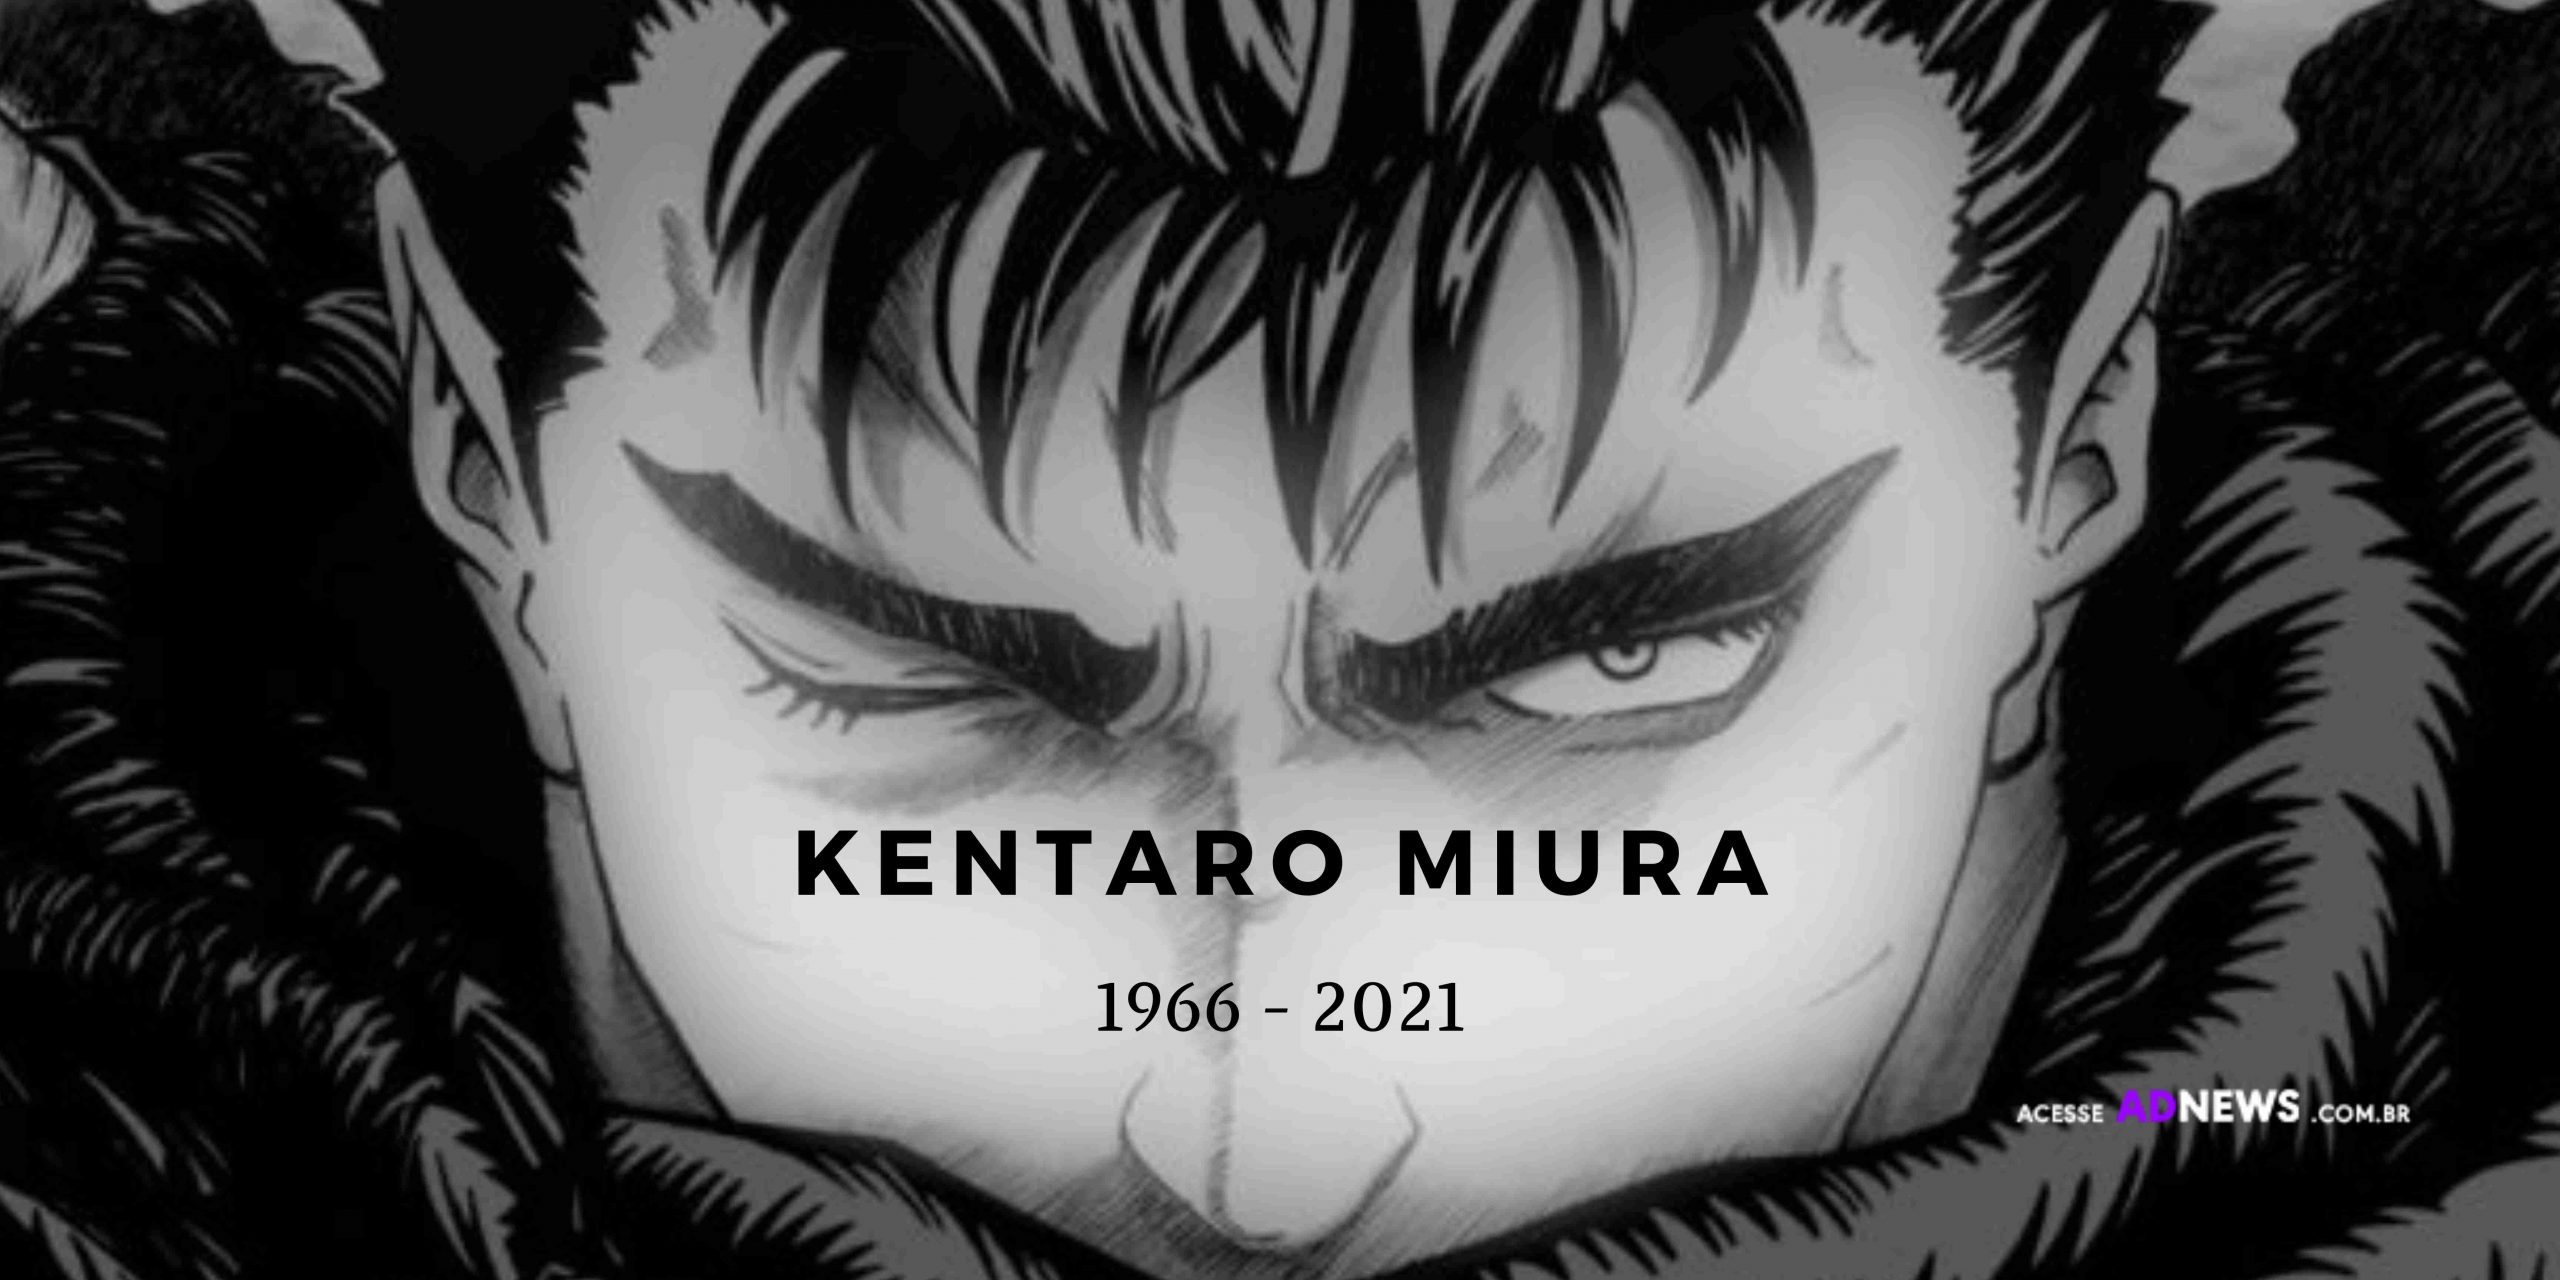 Kentaro Miura, criador do mangá ‘Berserk’, morre aos 54 anos